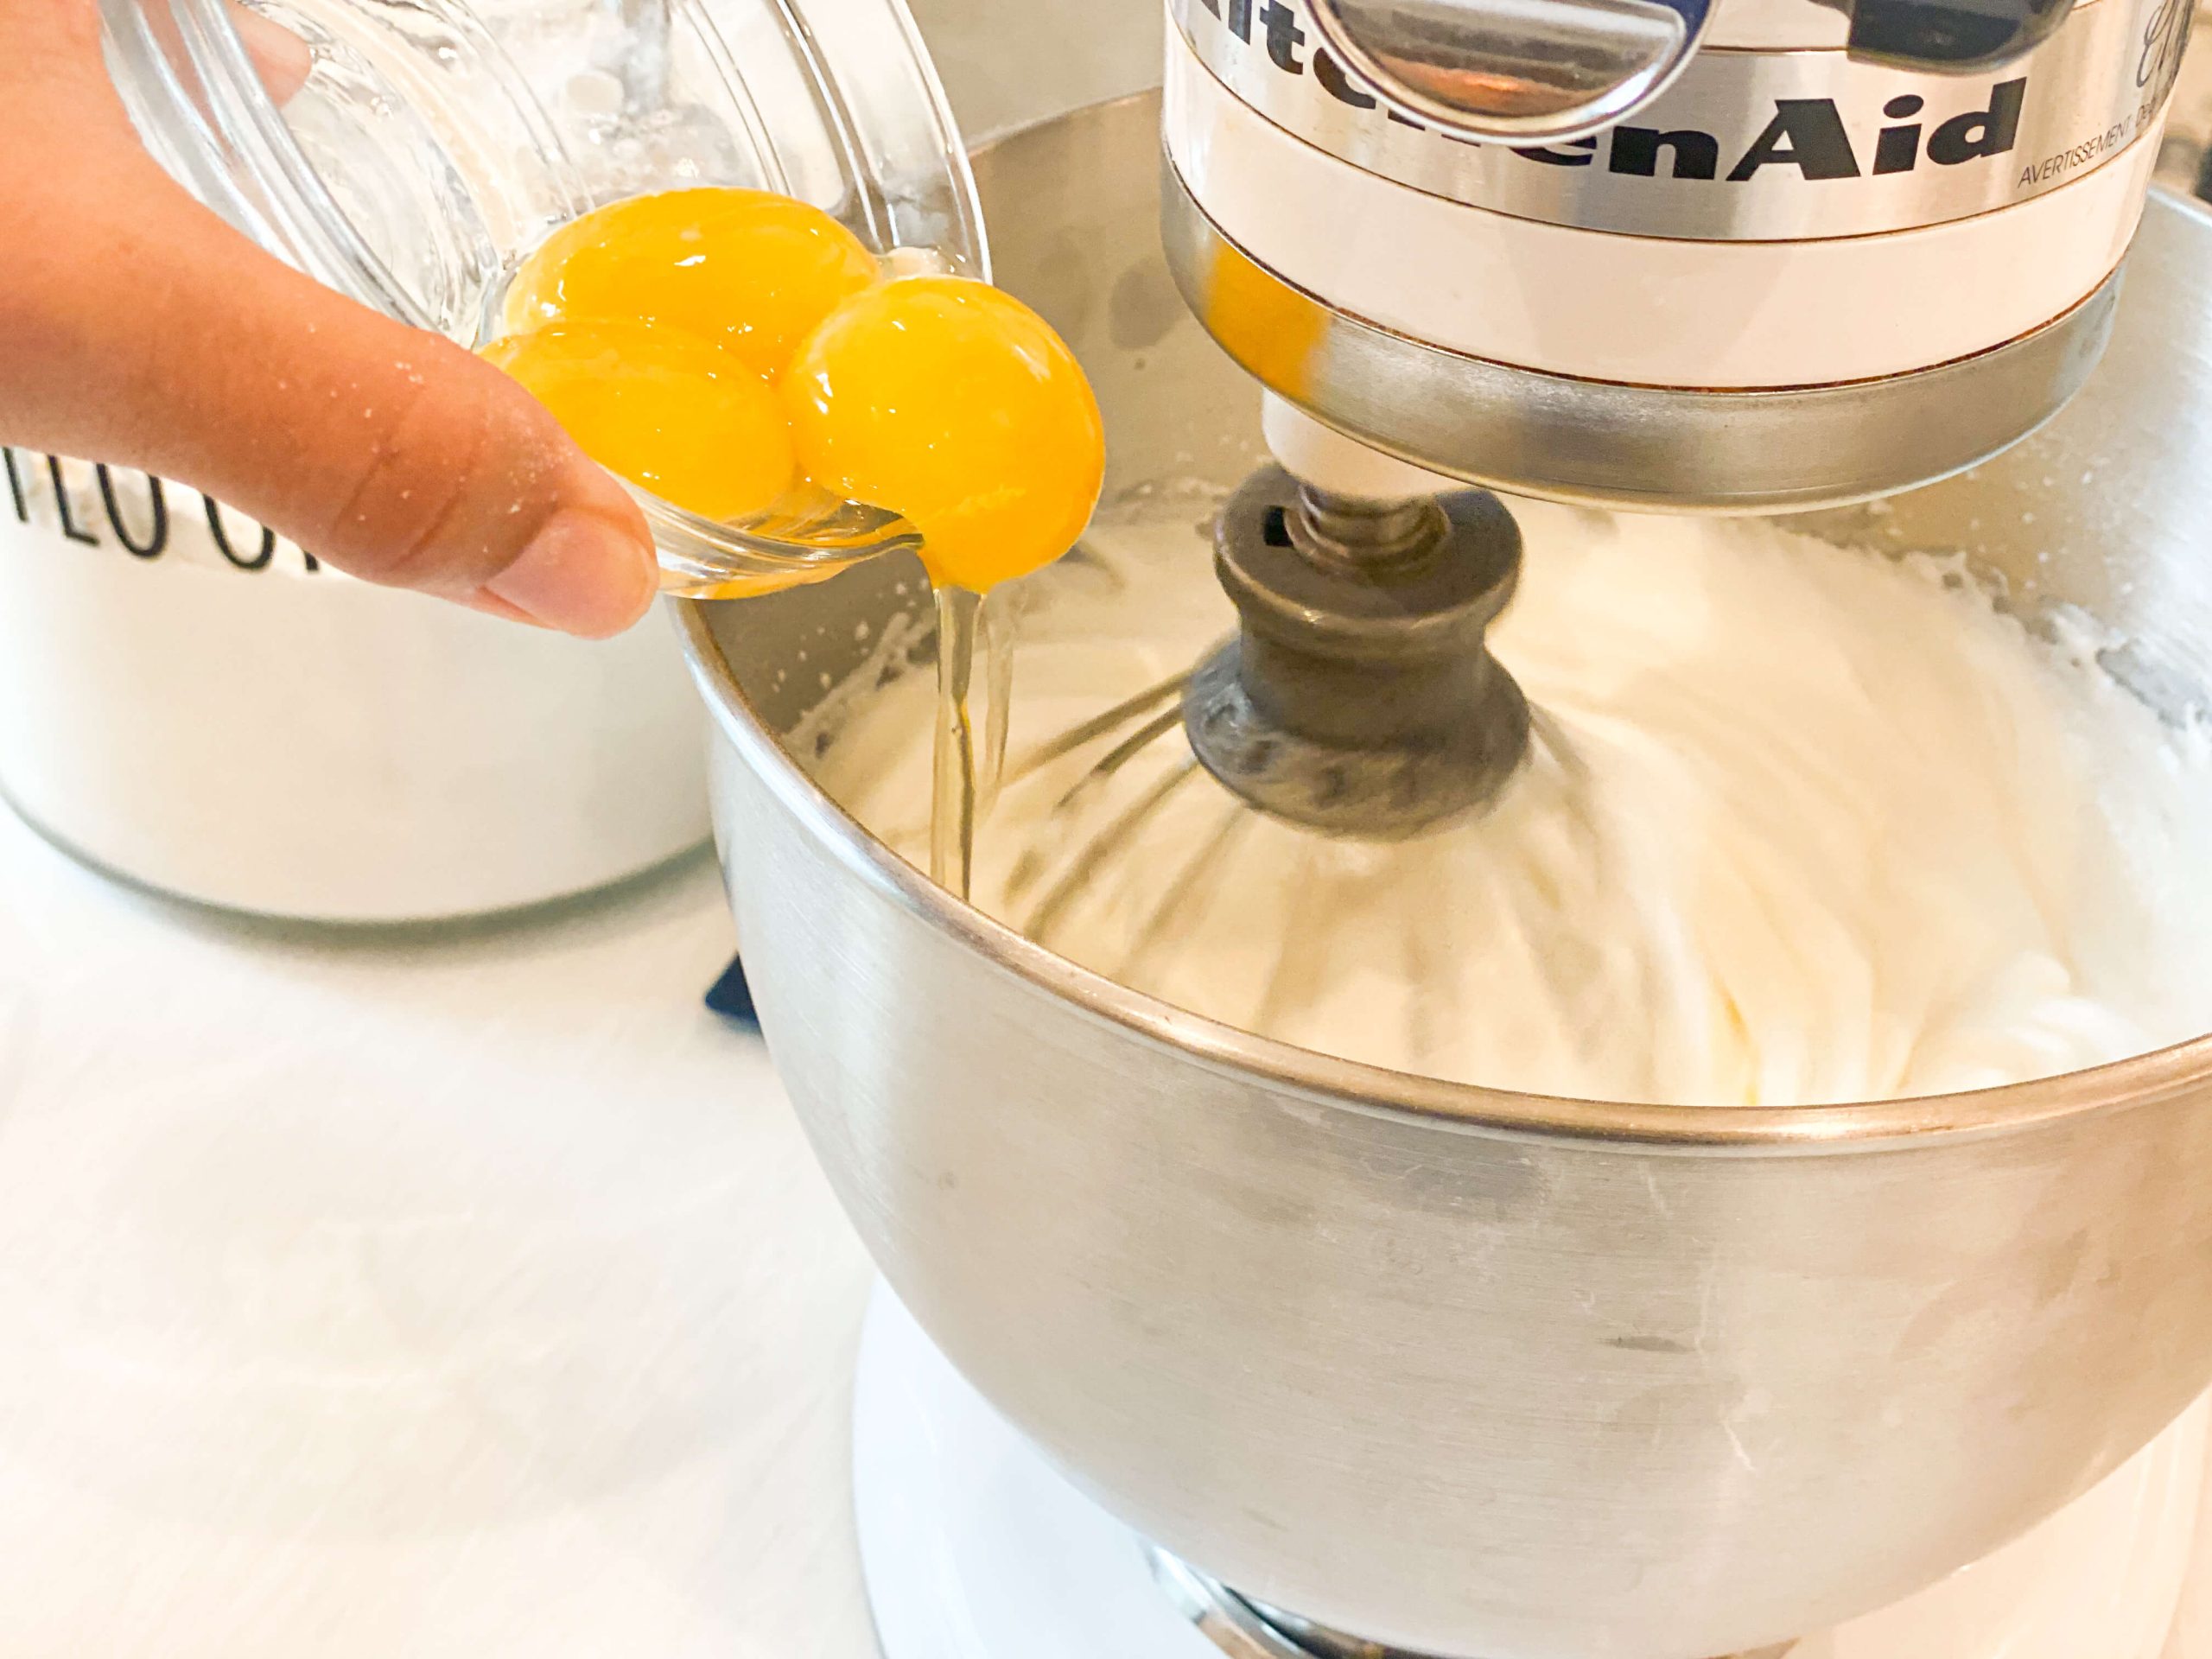 Egg yolks added to cake batter
